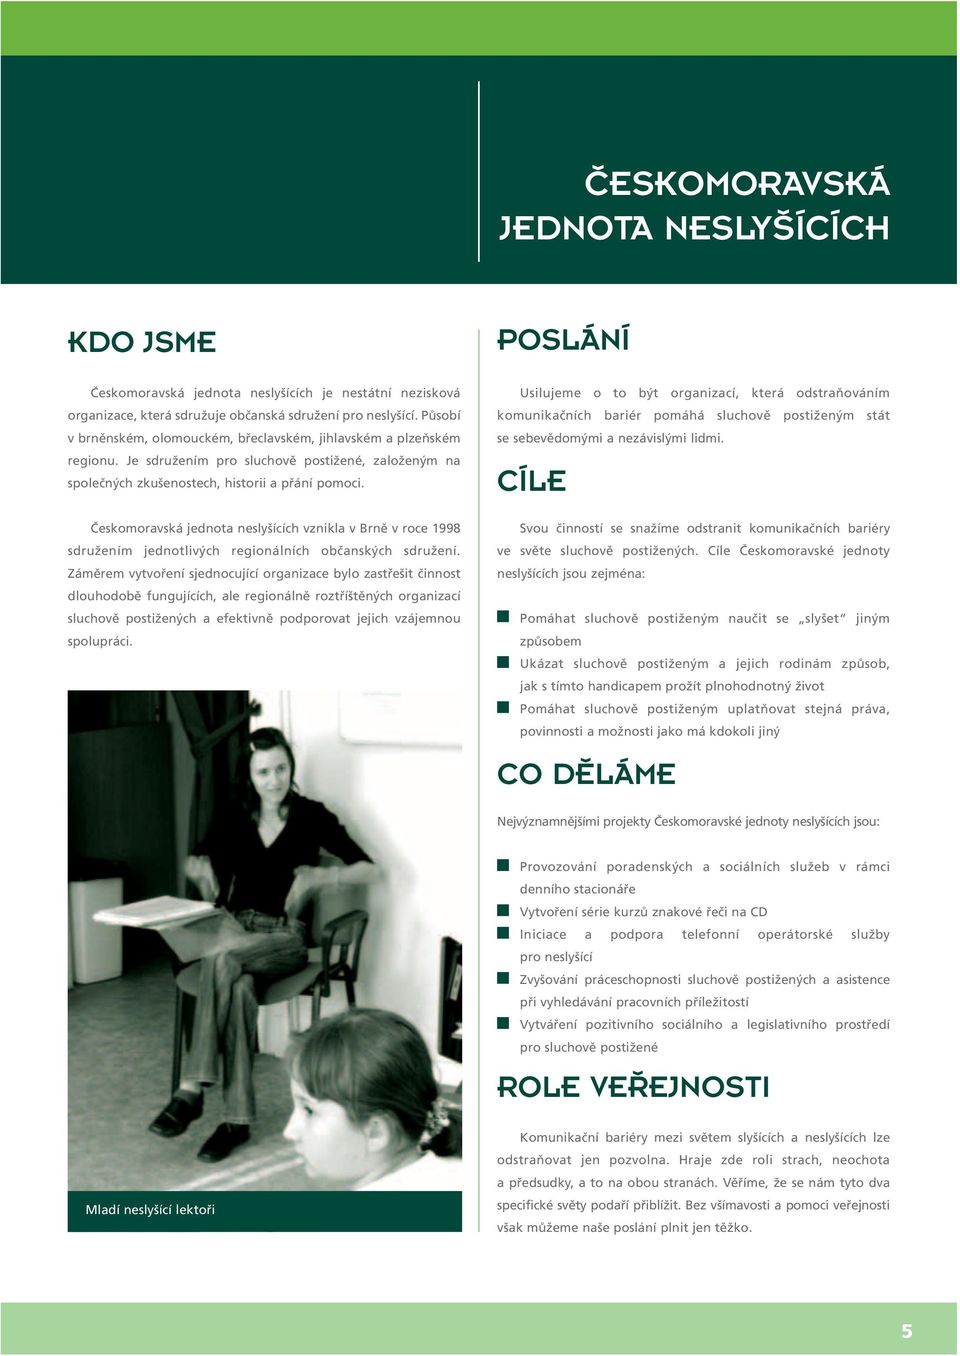 Českomoravská jednota neslyšících vznikla v Brně v roce 1998 sdružením jednotlivých regionálních občanských sdružení.